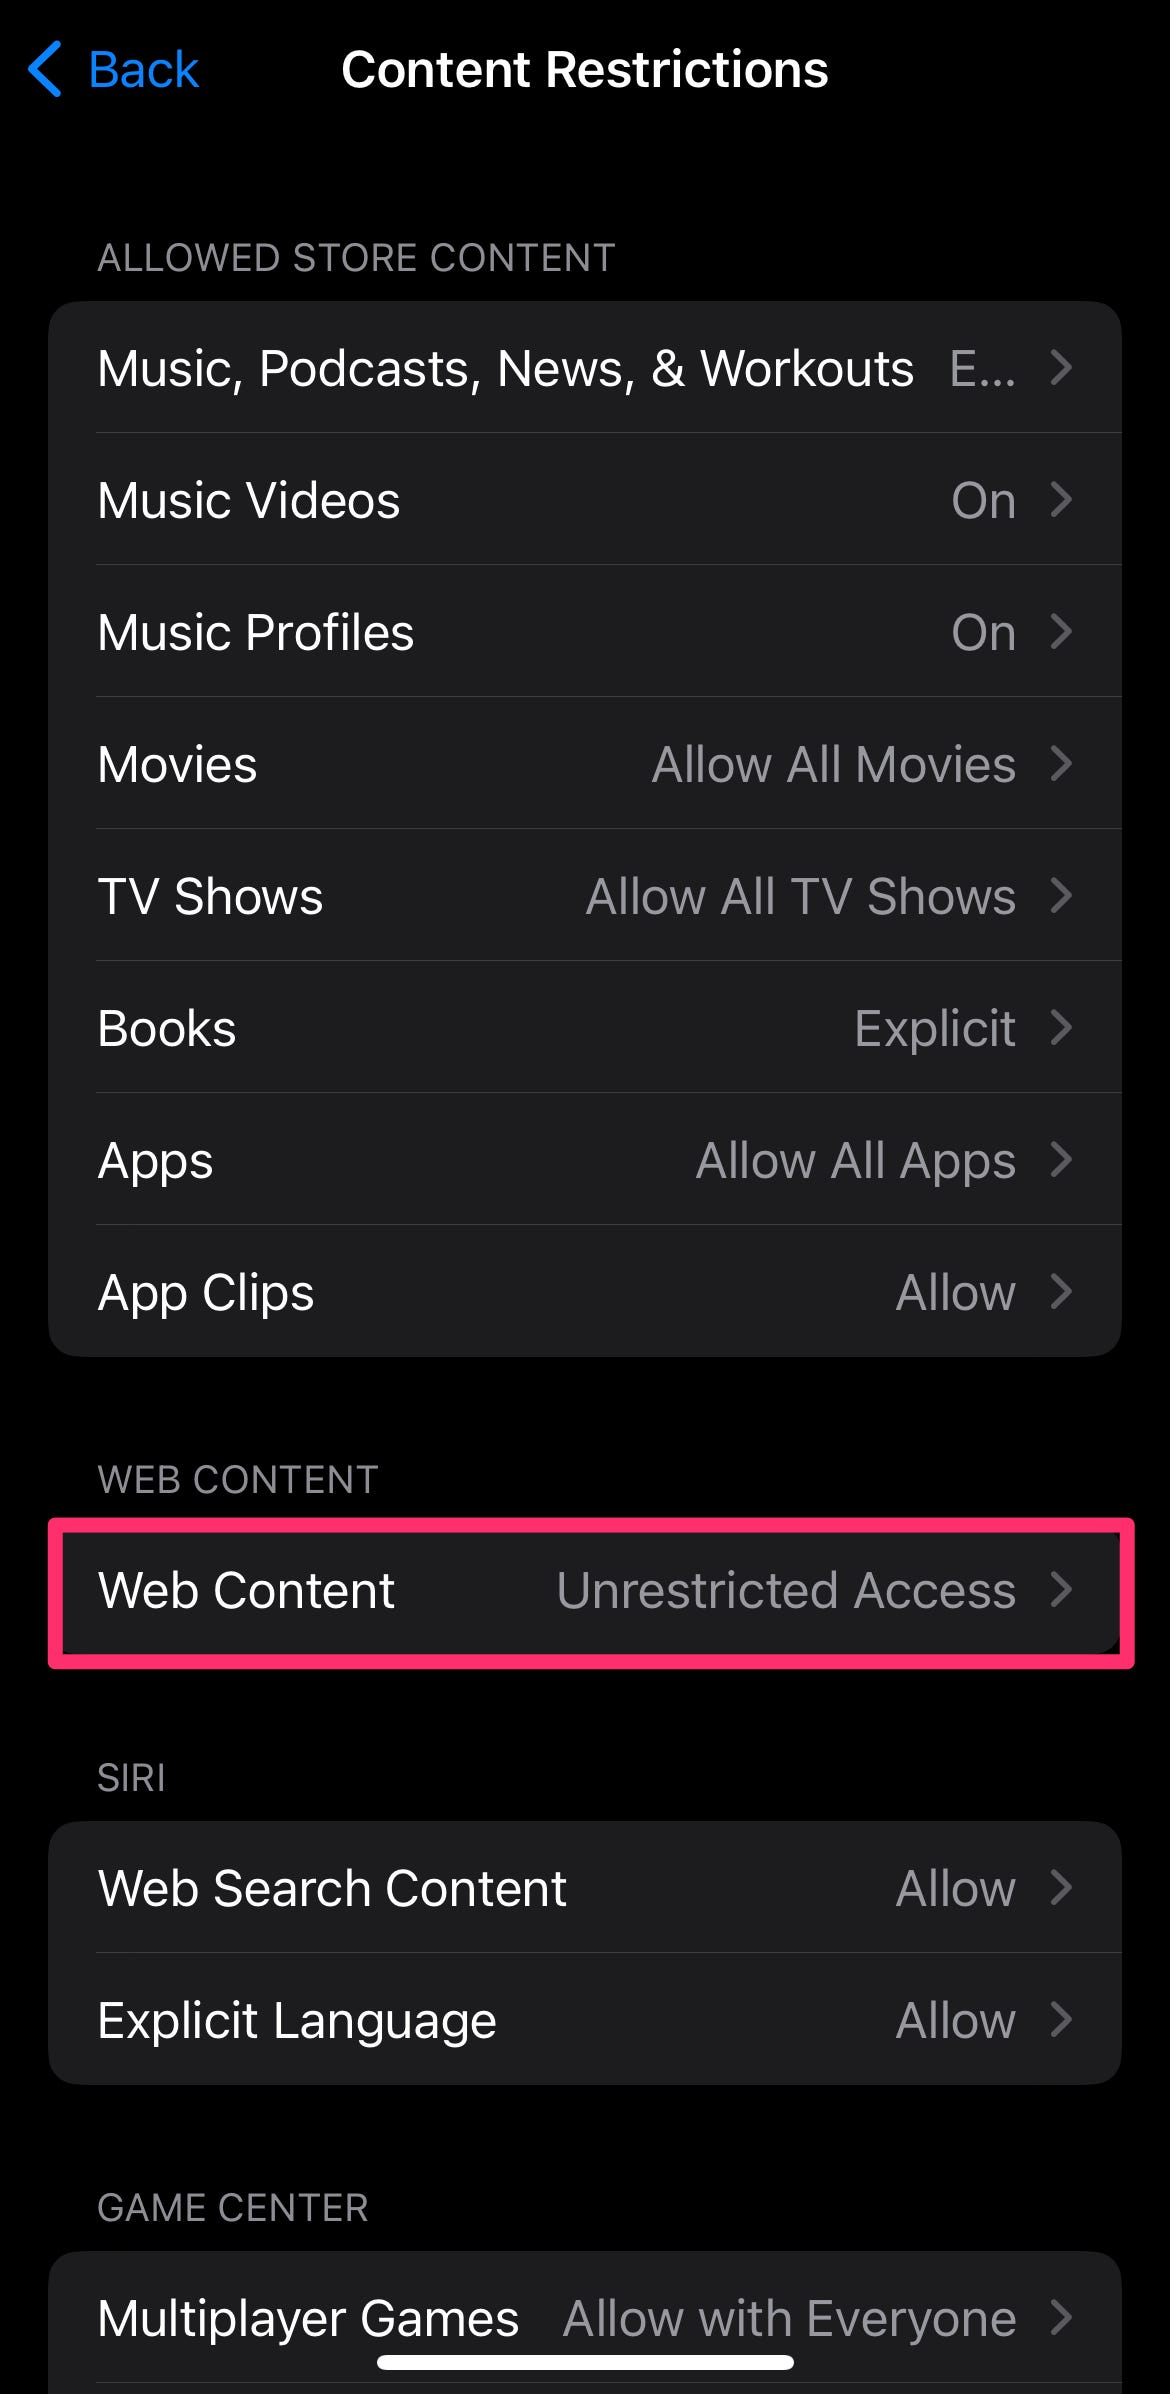 Impostazioni delle restrizioni del contenuto con il contenuto Web evidenziato.